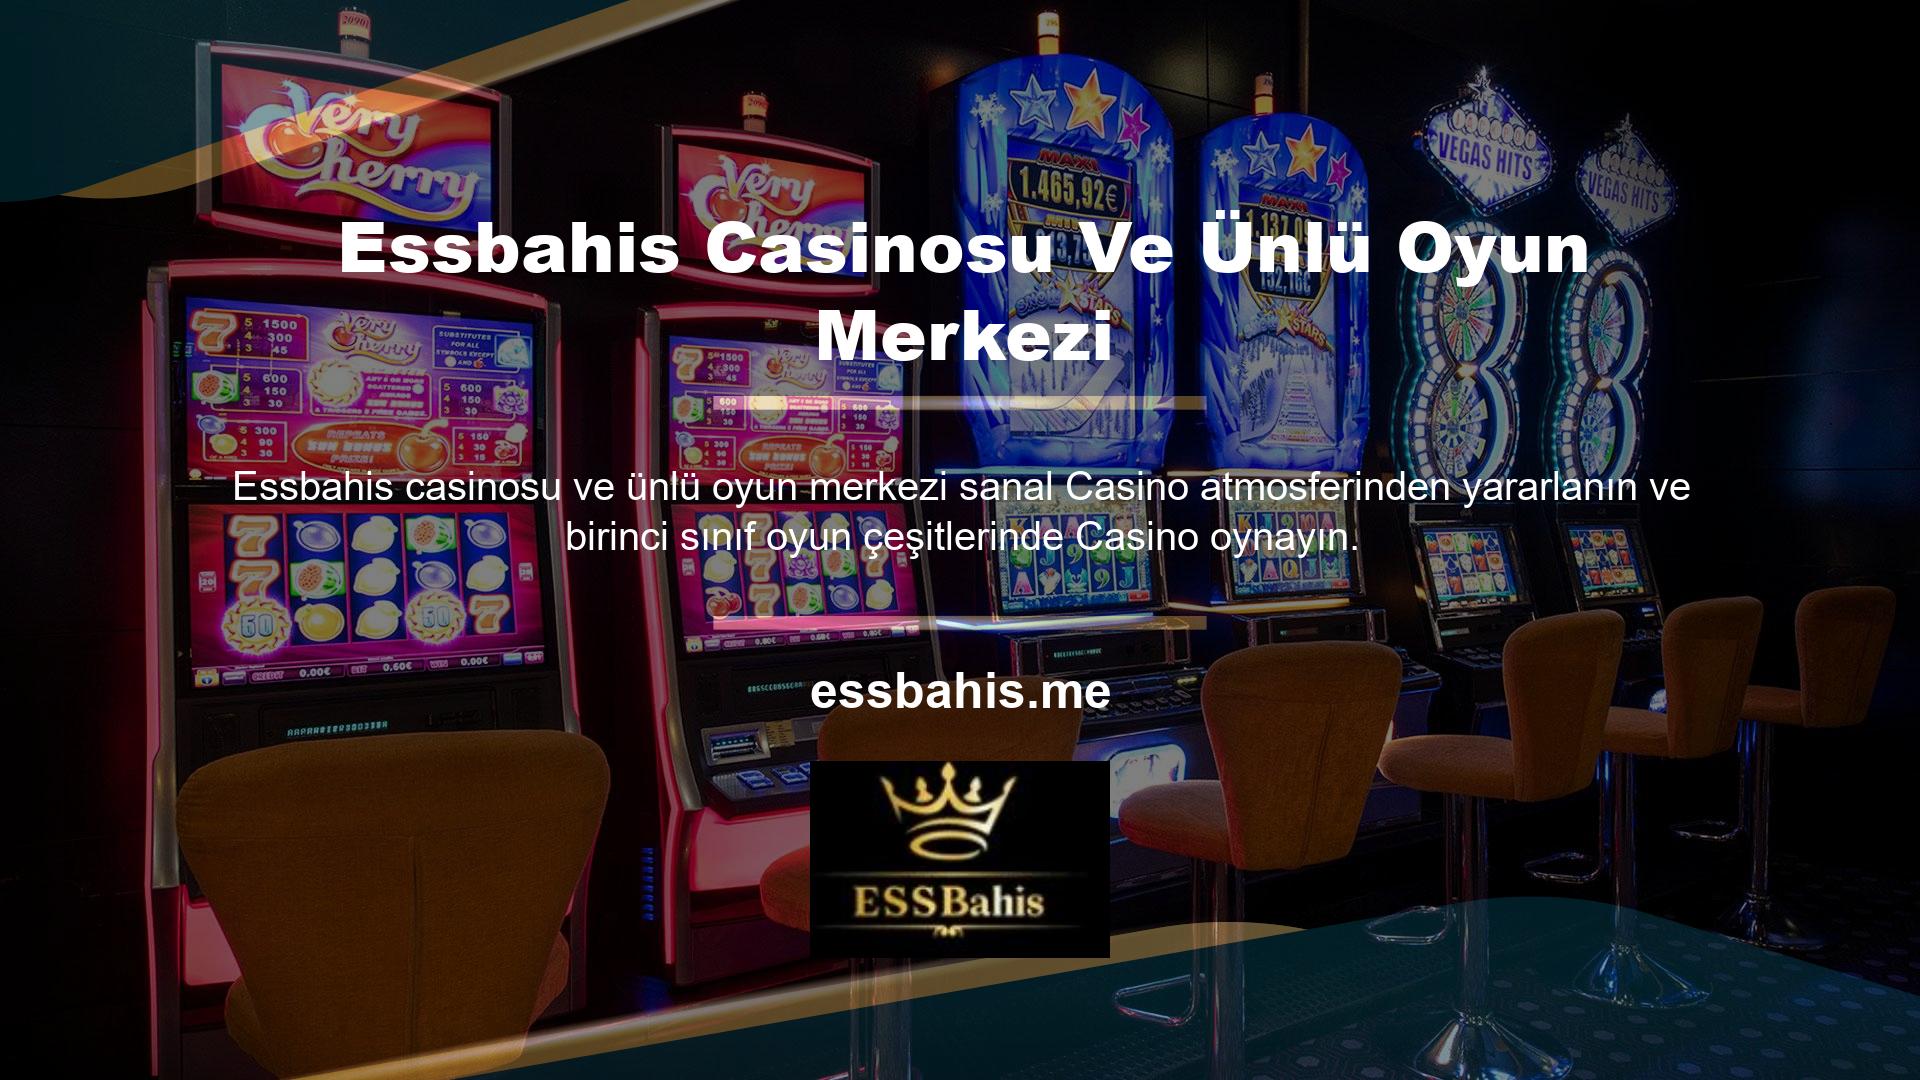 Çevrimiçi Casino sitelerinde sunulan Casino oyunlarının çeşitliliği inanılmazdır